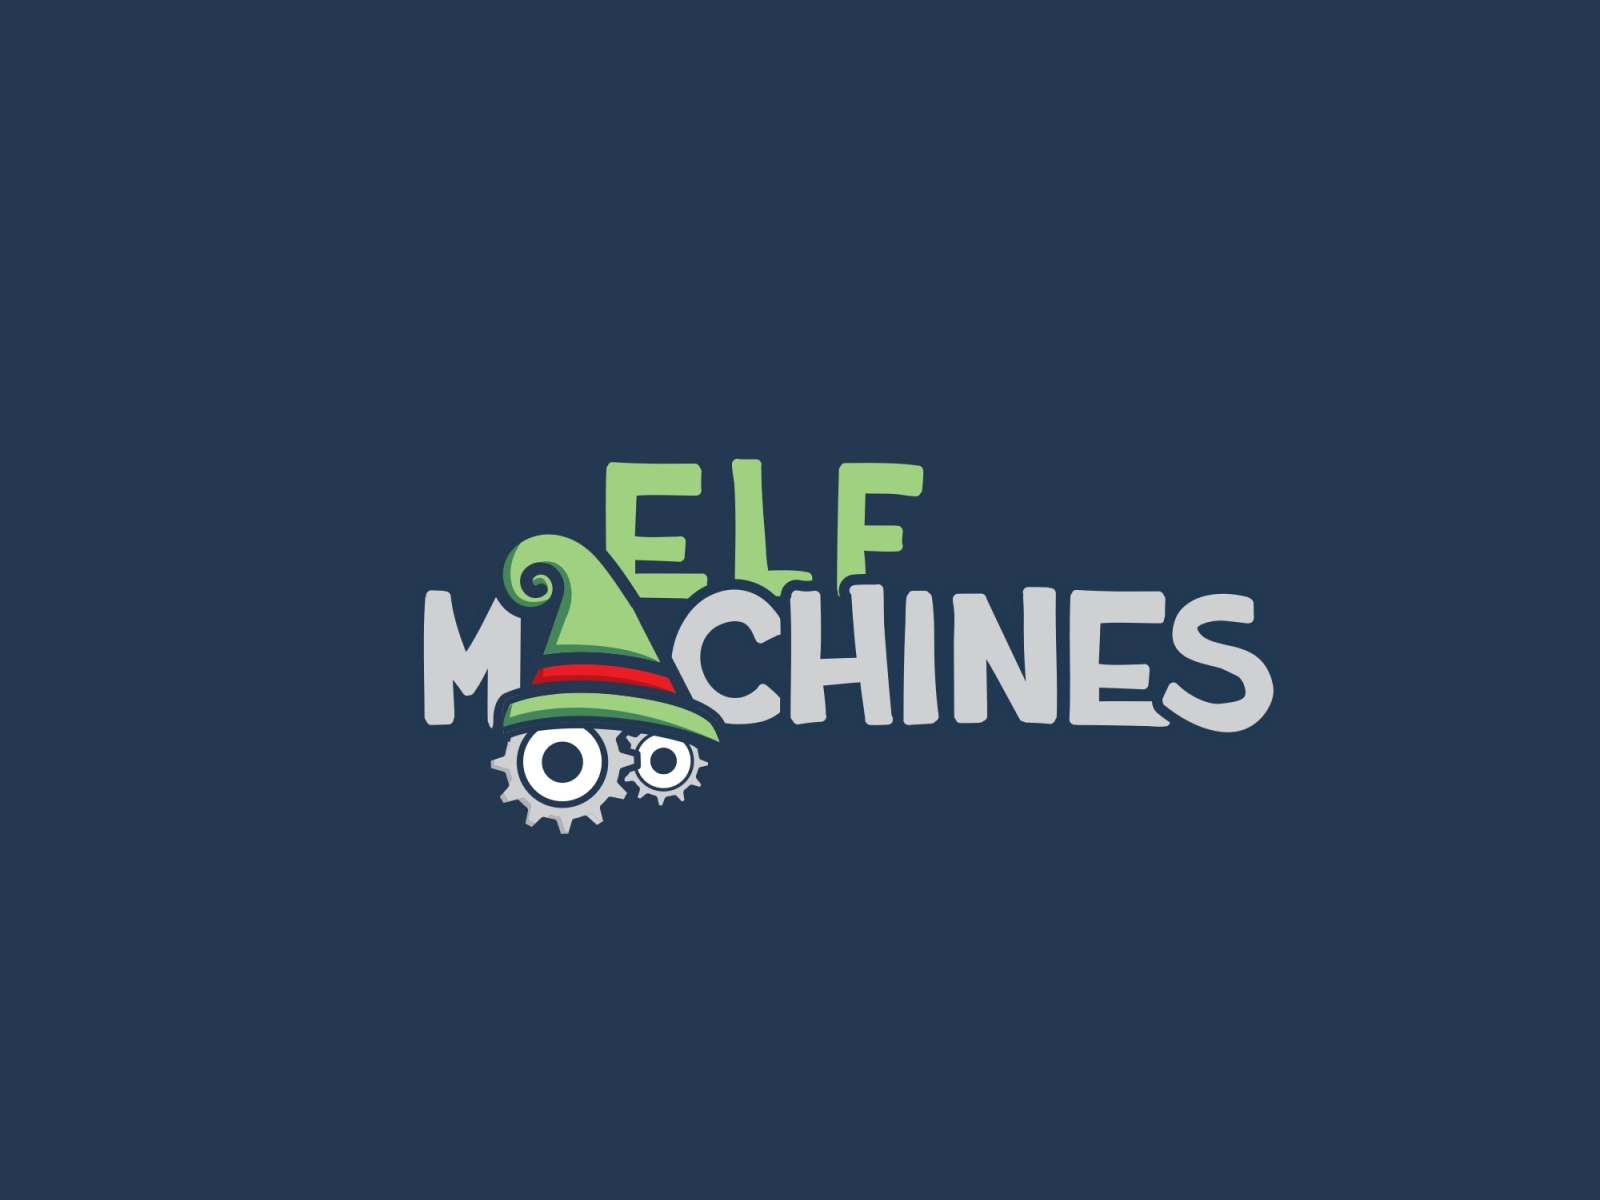 Elf Machines